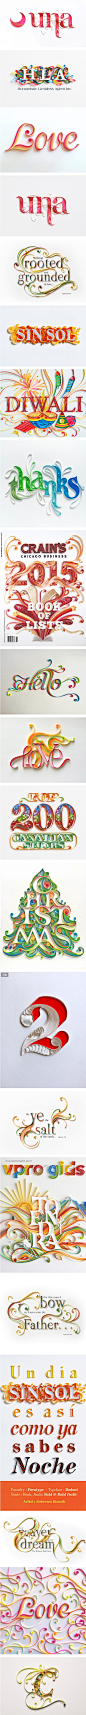 21款-超漂亮的折纸艺术英文字体创意花形设计欣_字体传奇网-中国首个字体品牌设计师交流网